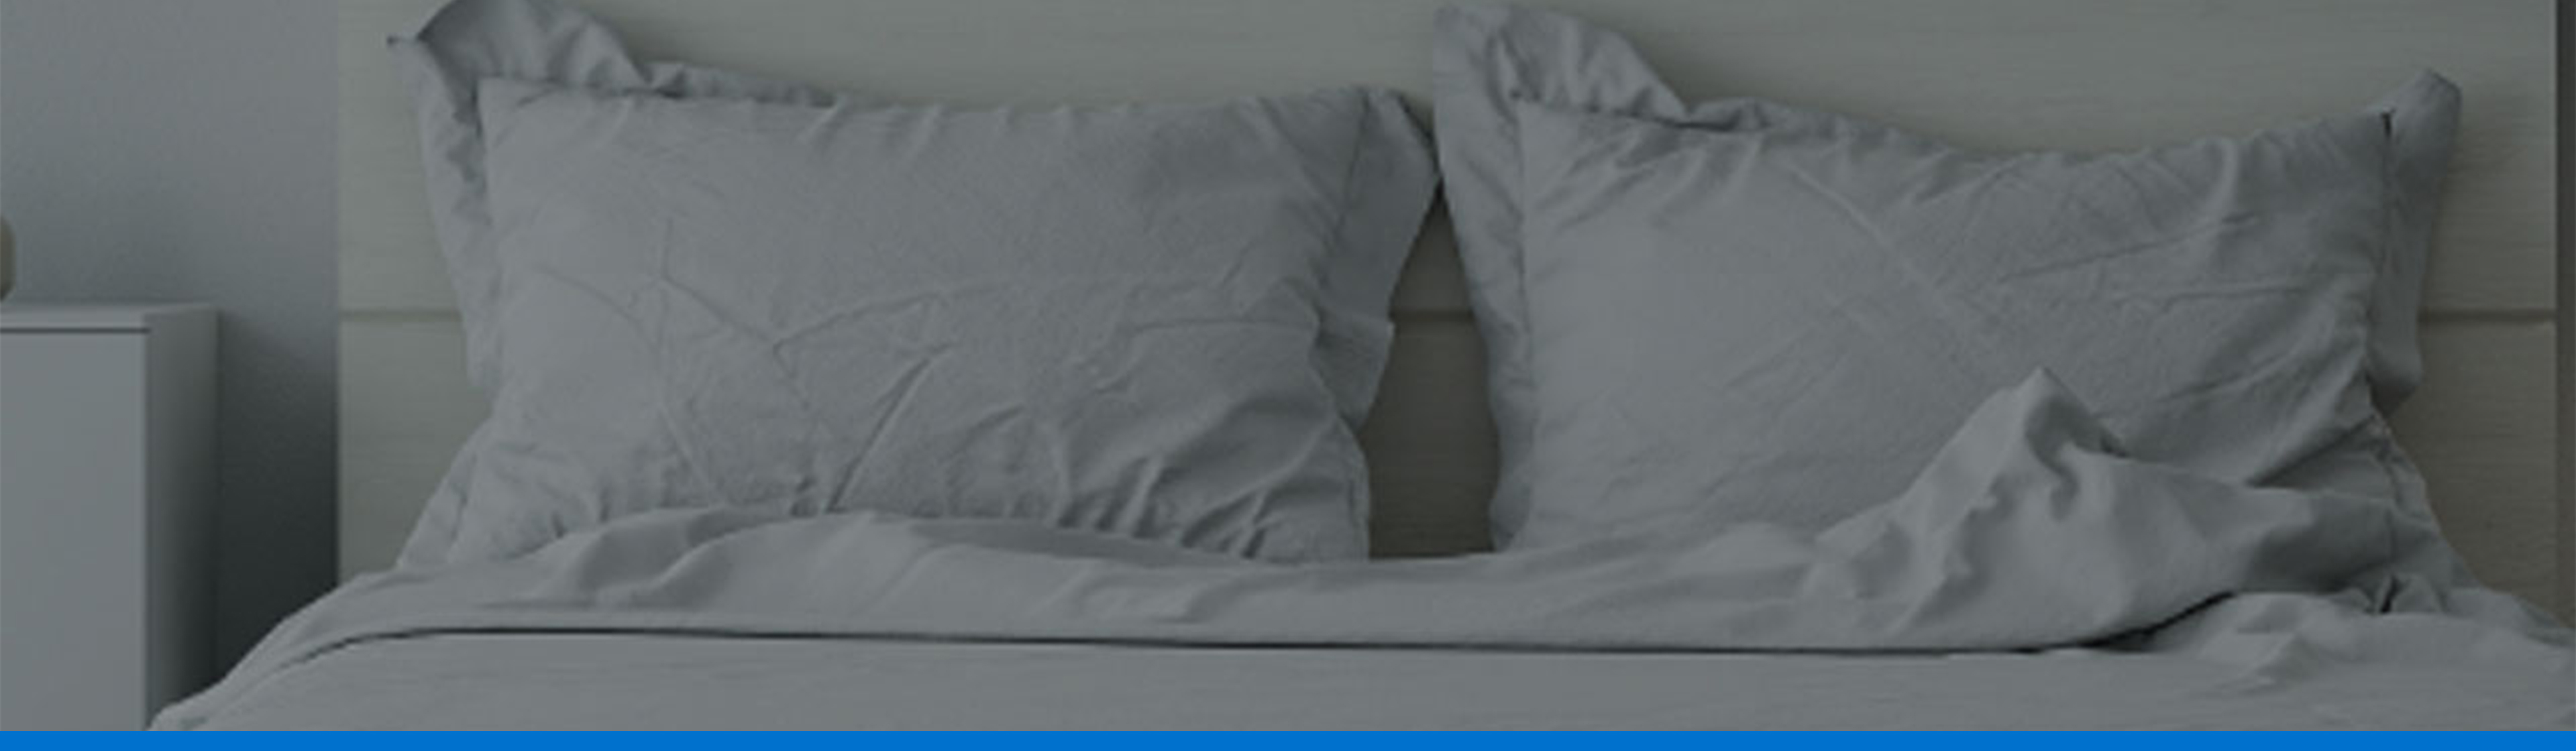 Tipos de almohadas: descubre cuál es la ideal para ti